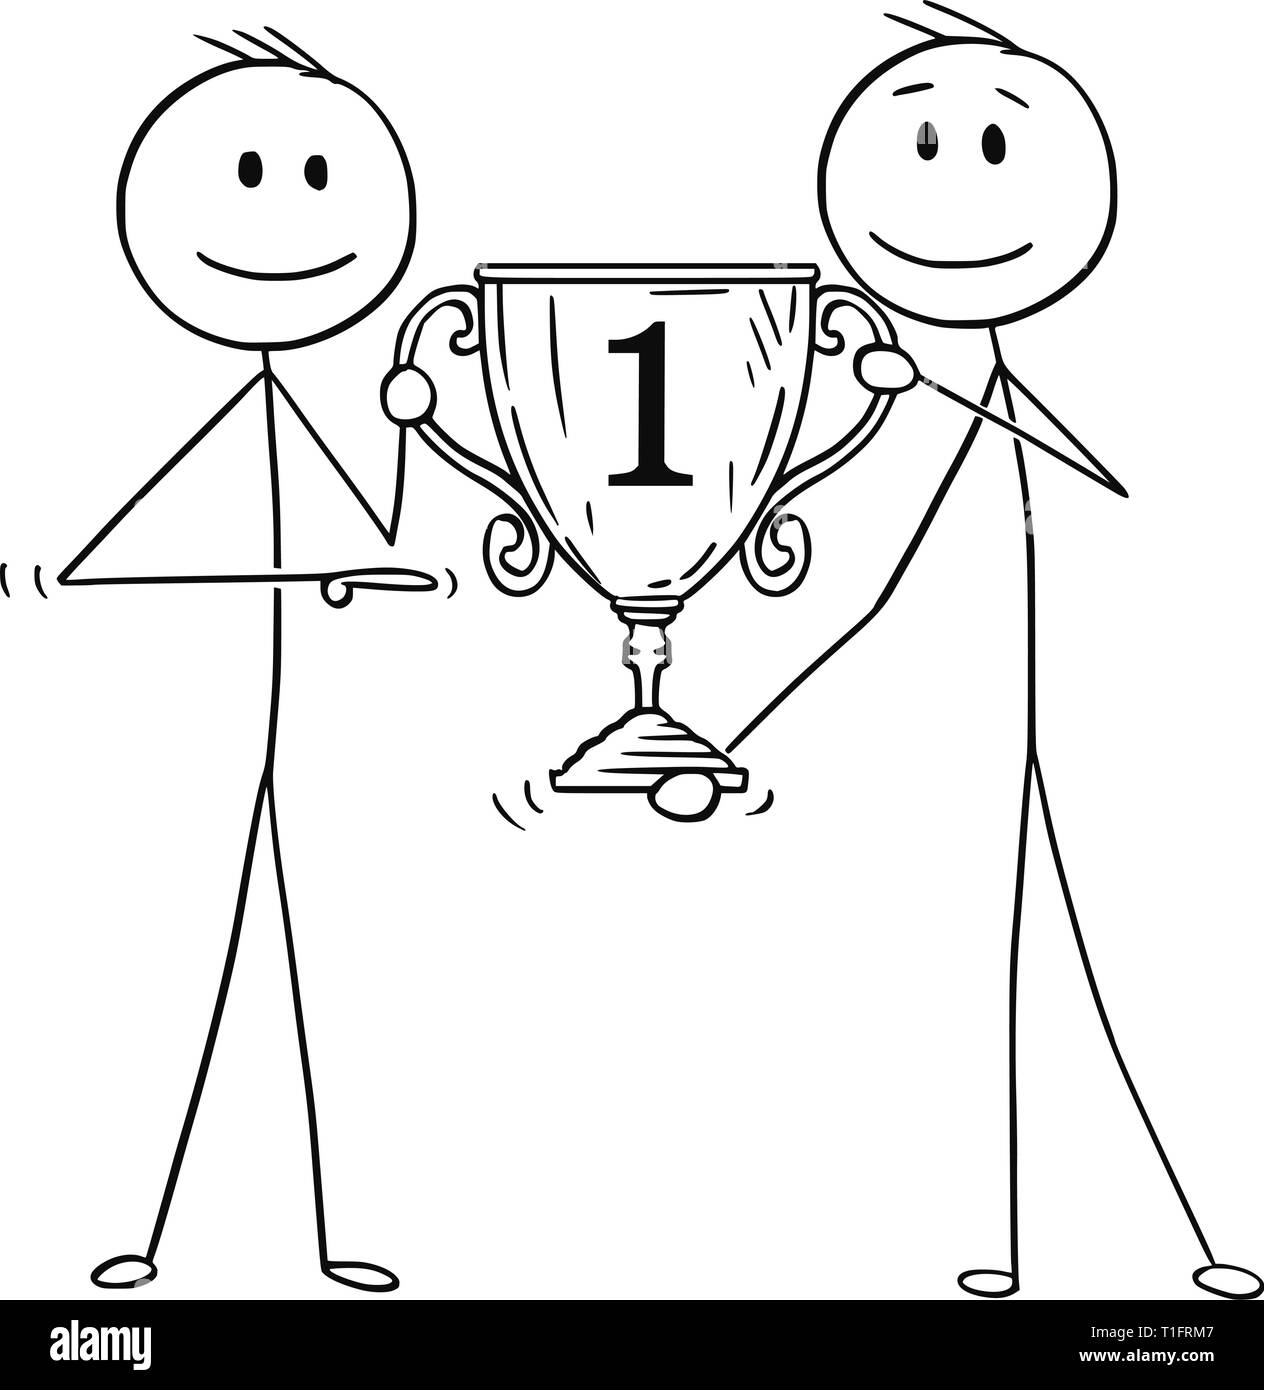 Cartoon Strichmännchen Zeichnung konzeptuelle Abbildung von zwei Männern oder Geschäftsleute, die Nummer eins der Trophy Pokal für Gewinner. Business Konzept von Erfolg und Wettbewerb. Stock Vektor